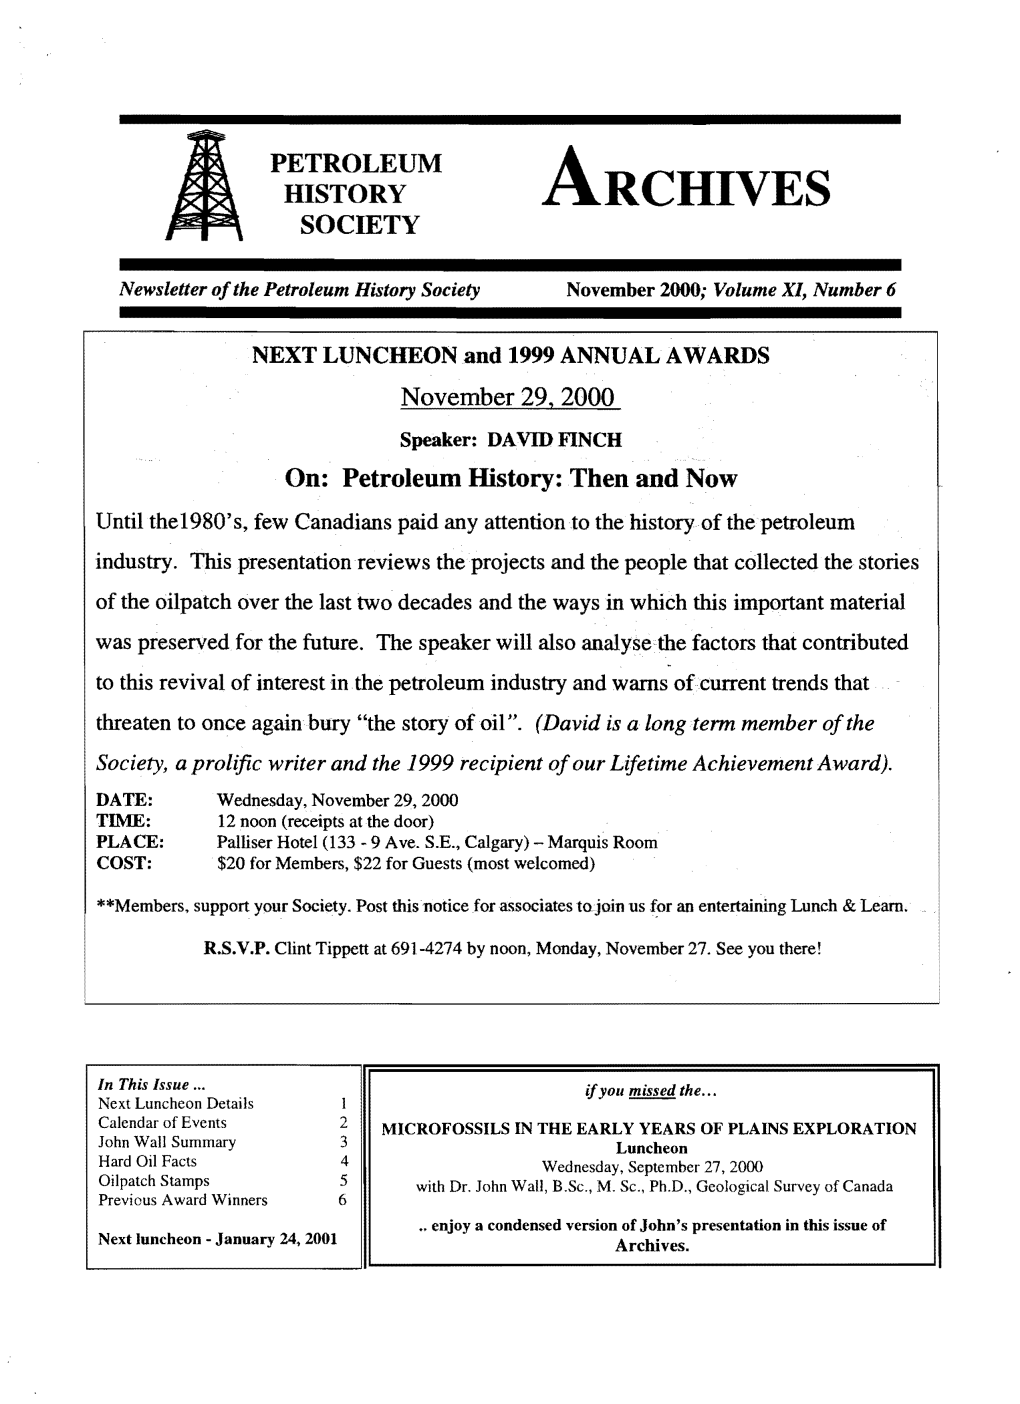 Archives Newsletter November 2000